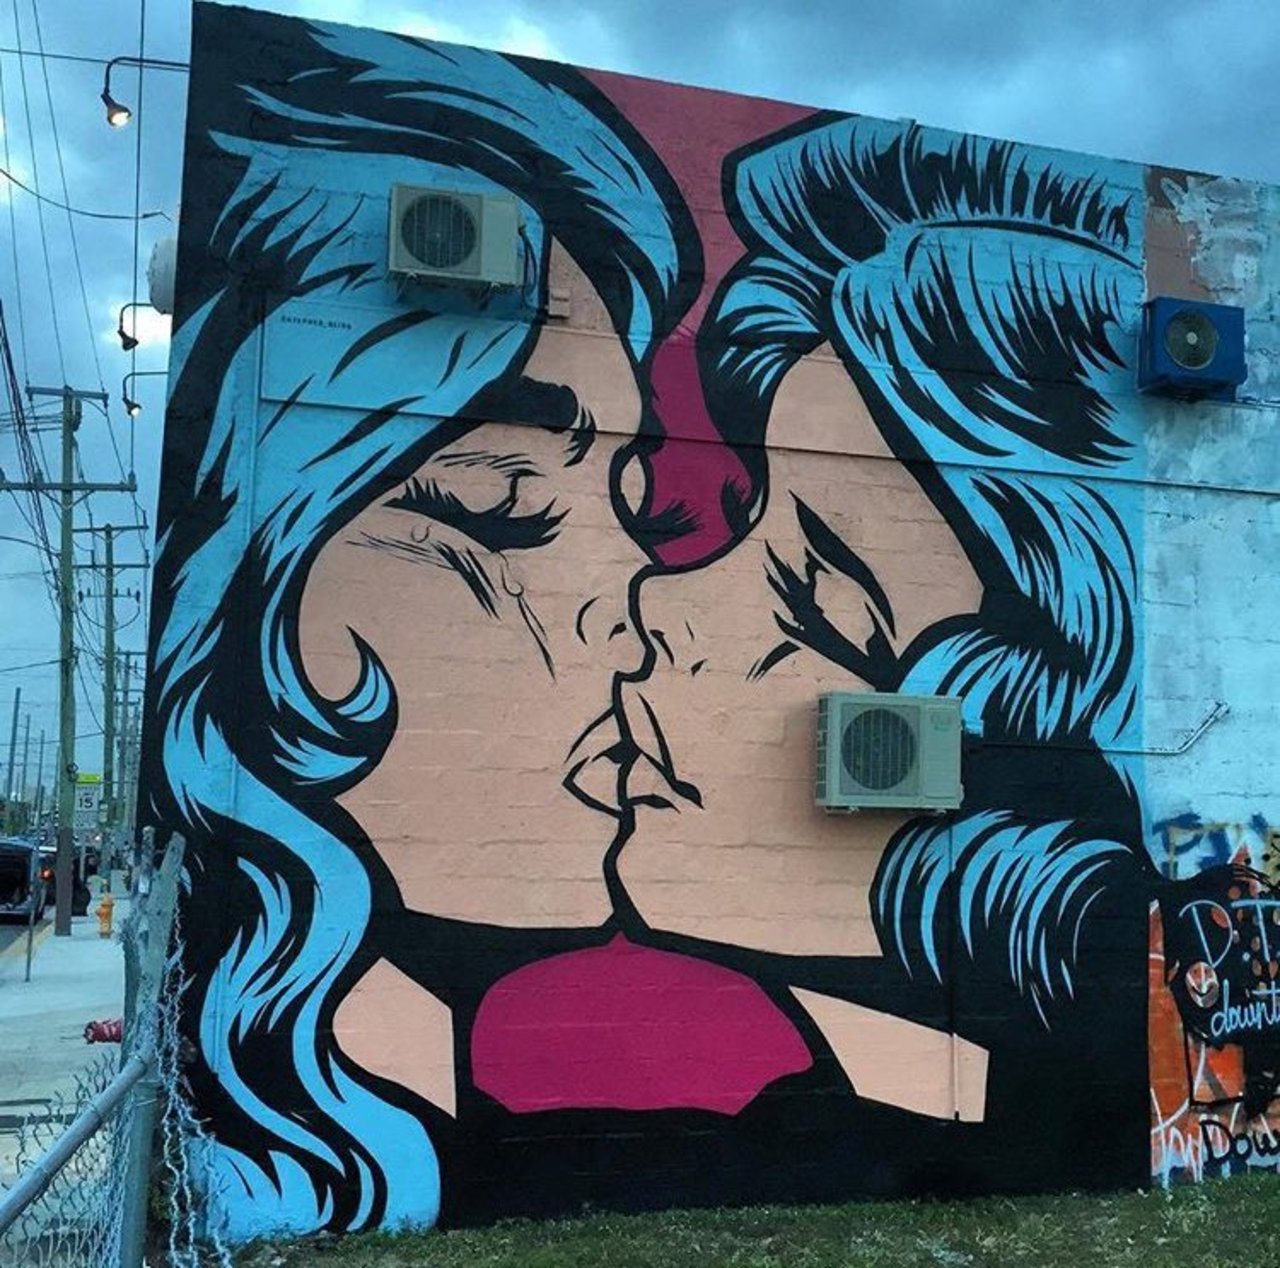 New Street Art by Stephen Bliss  Miami #art #mural #graffiti #streetart https://t.co/HttdxWuqJ2